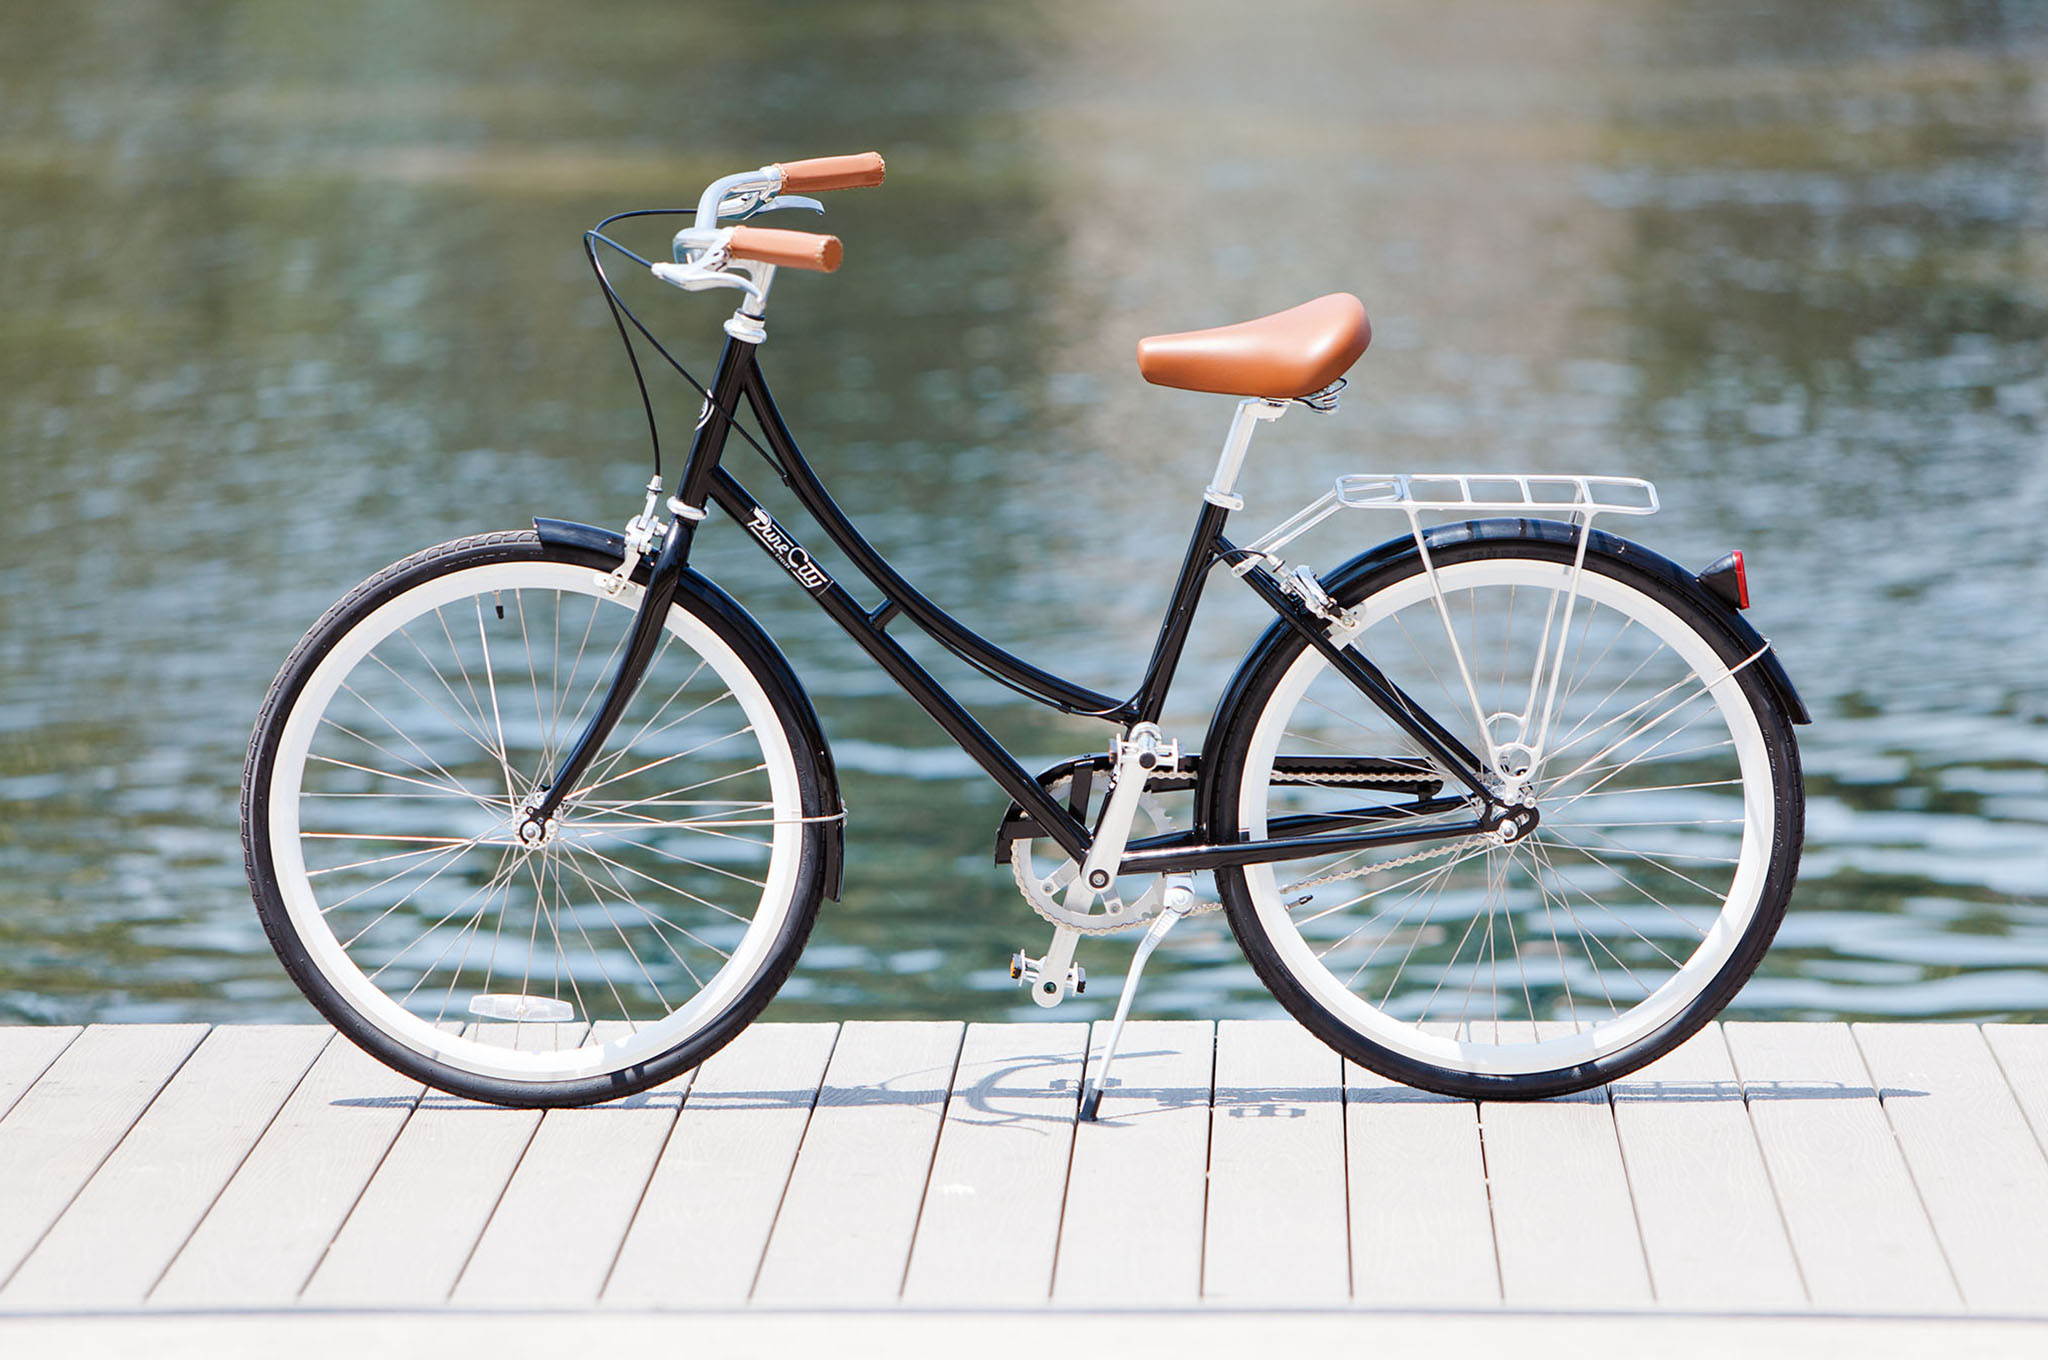 Велосипед мужской взрослый городской. Velo de ville велосипед. Pure Cycle велосипед City. Велосипед forward City Bike. City Cycle шоссейники с колёсами 26 дюймов.